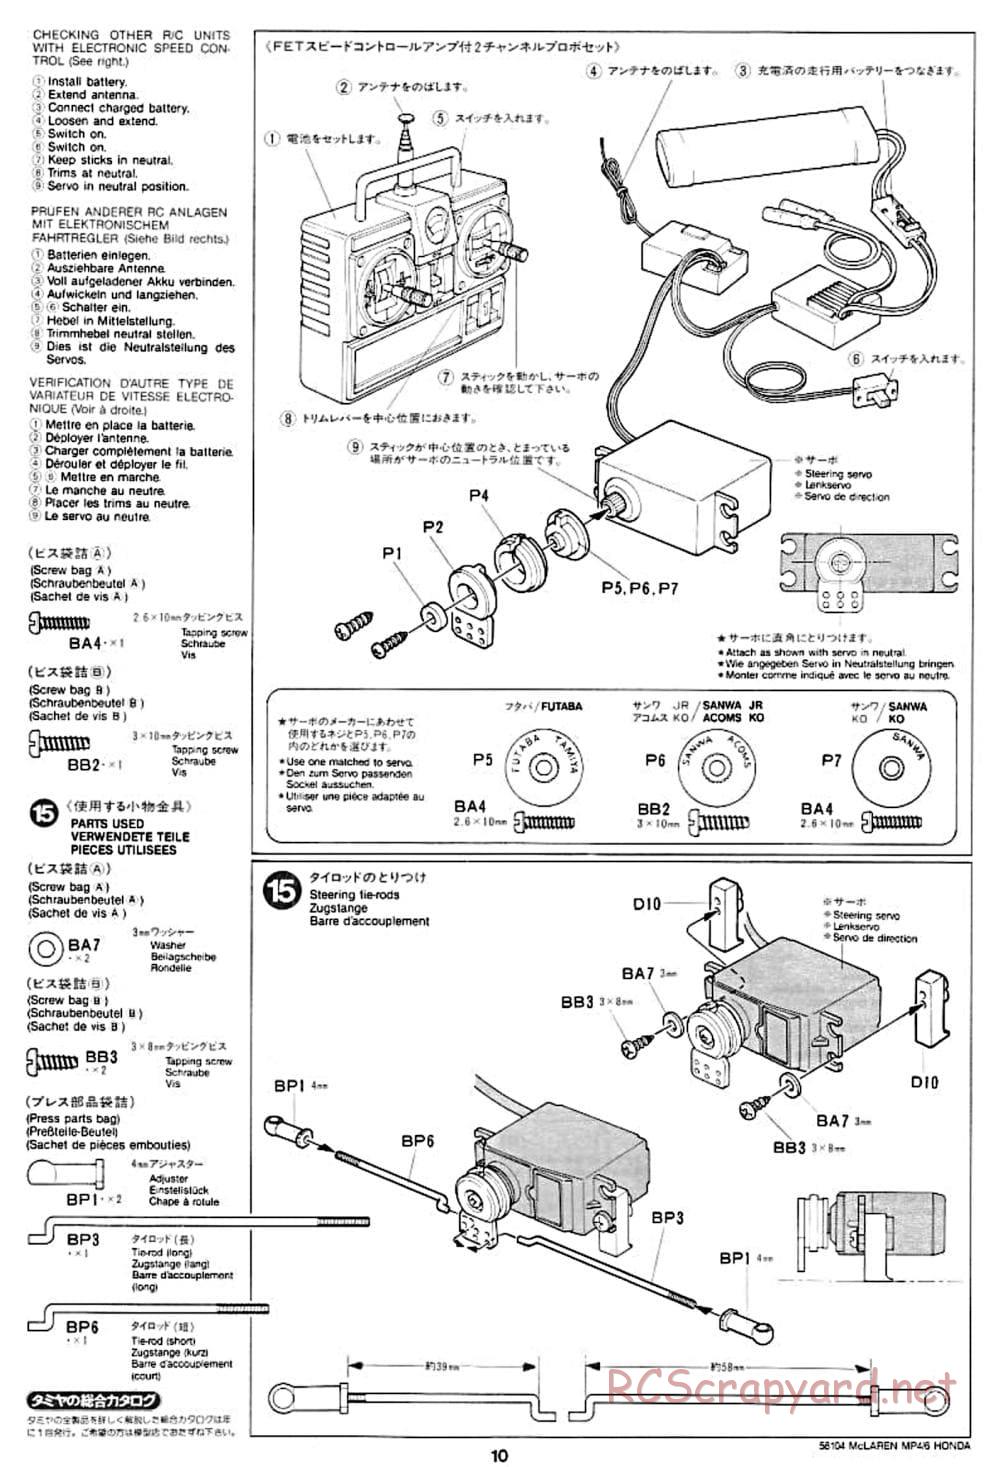 Tamiya - McLaren MP4/6 Honda - F102 Chassis - Manual - Page 10